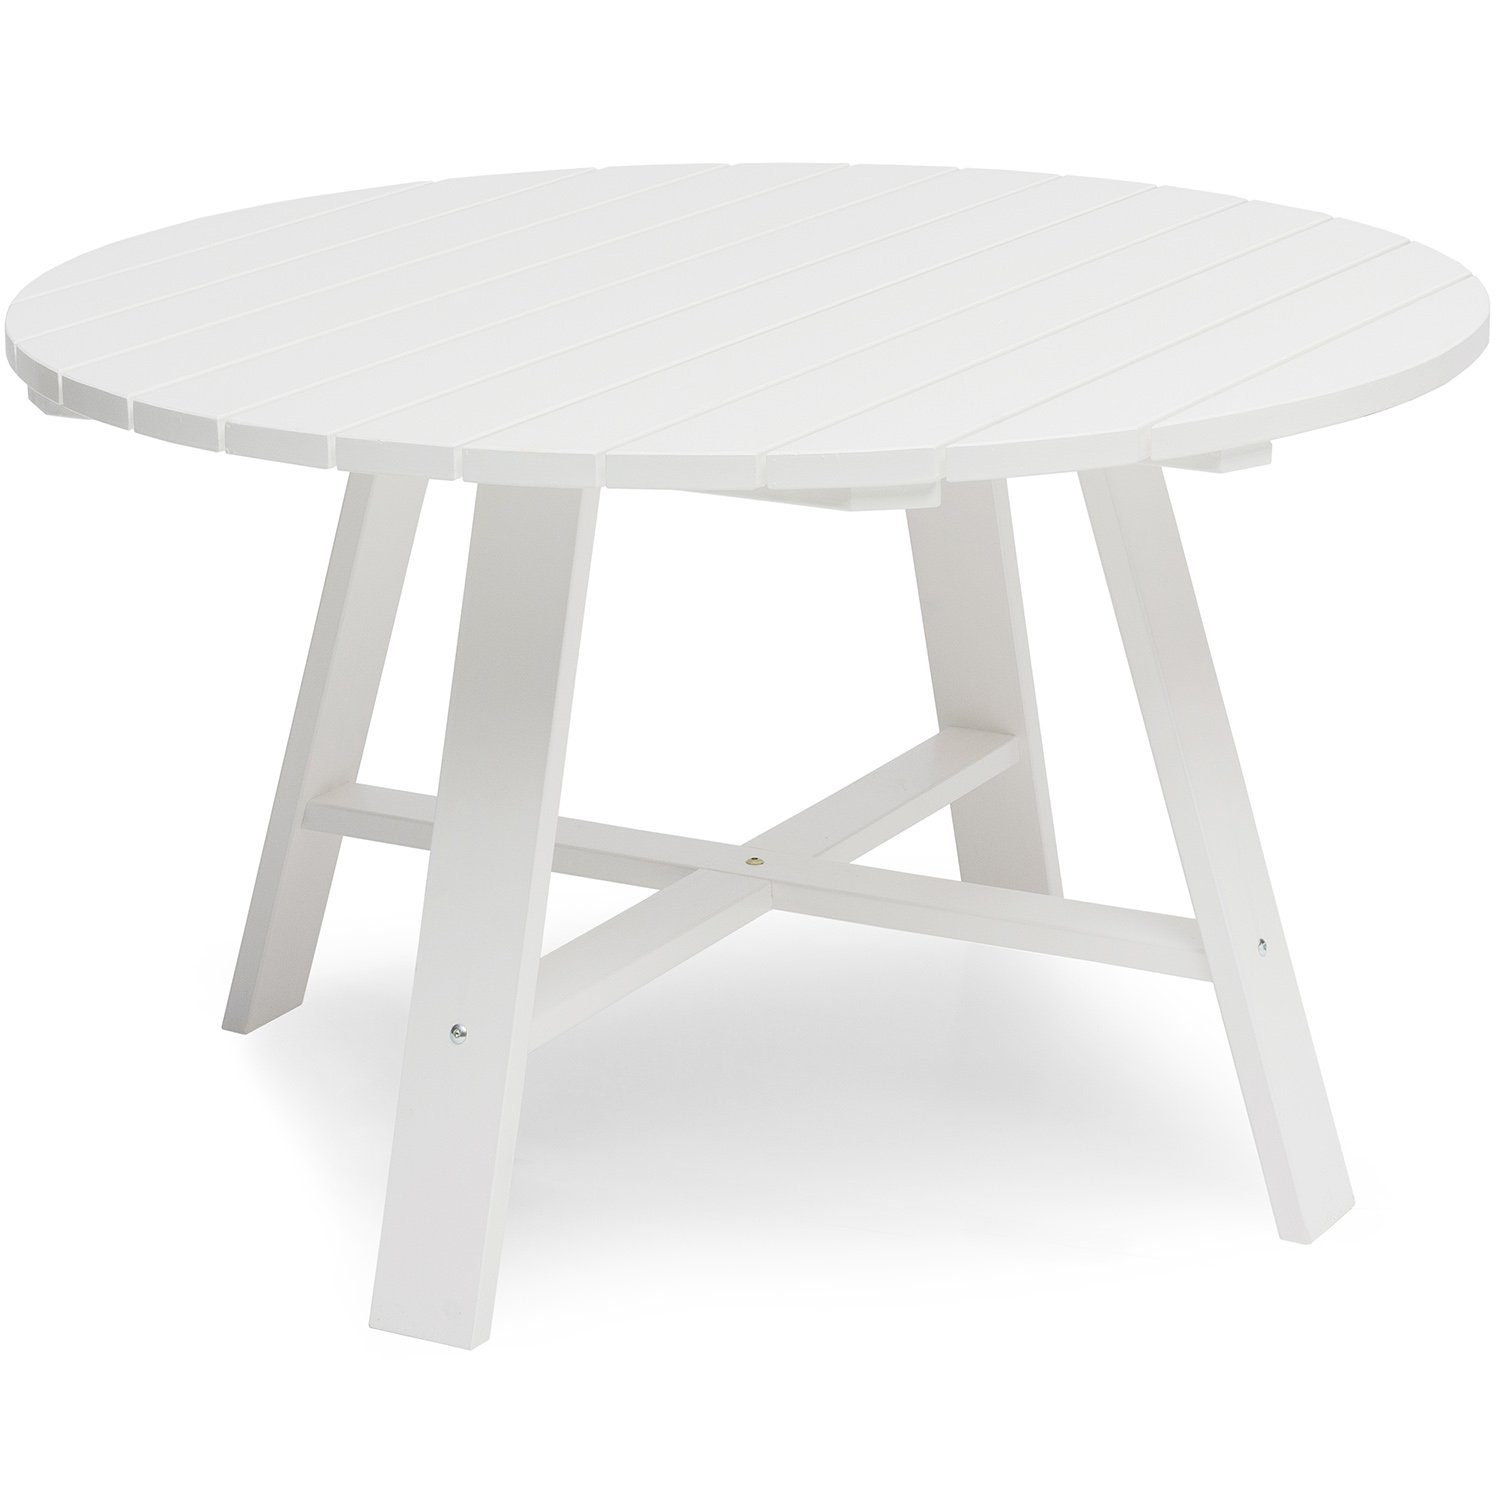 Läckö matbord i vitt 120 cm i diameter från Hillerstorp.